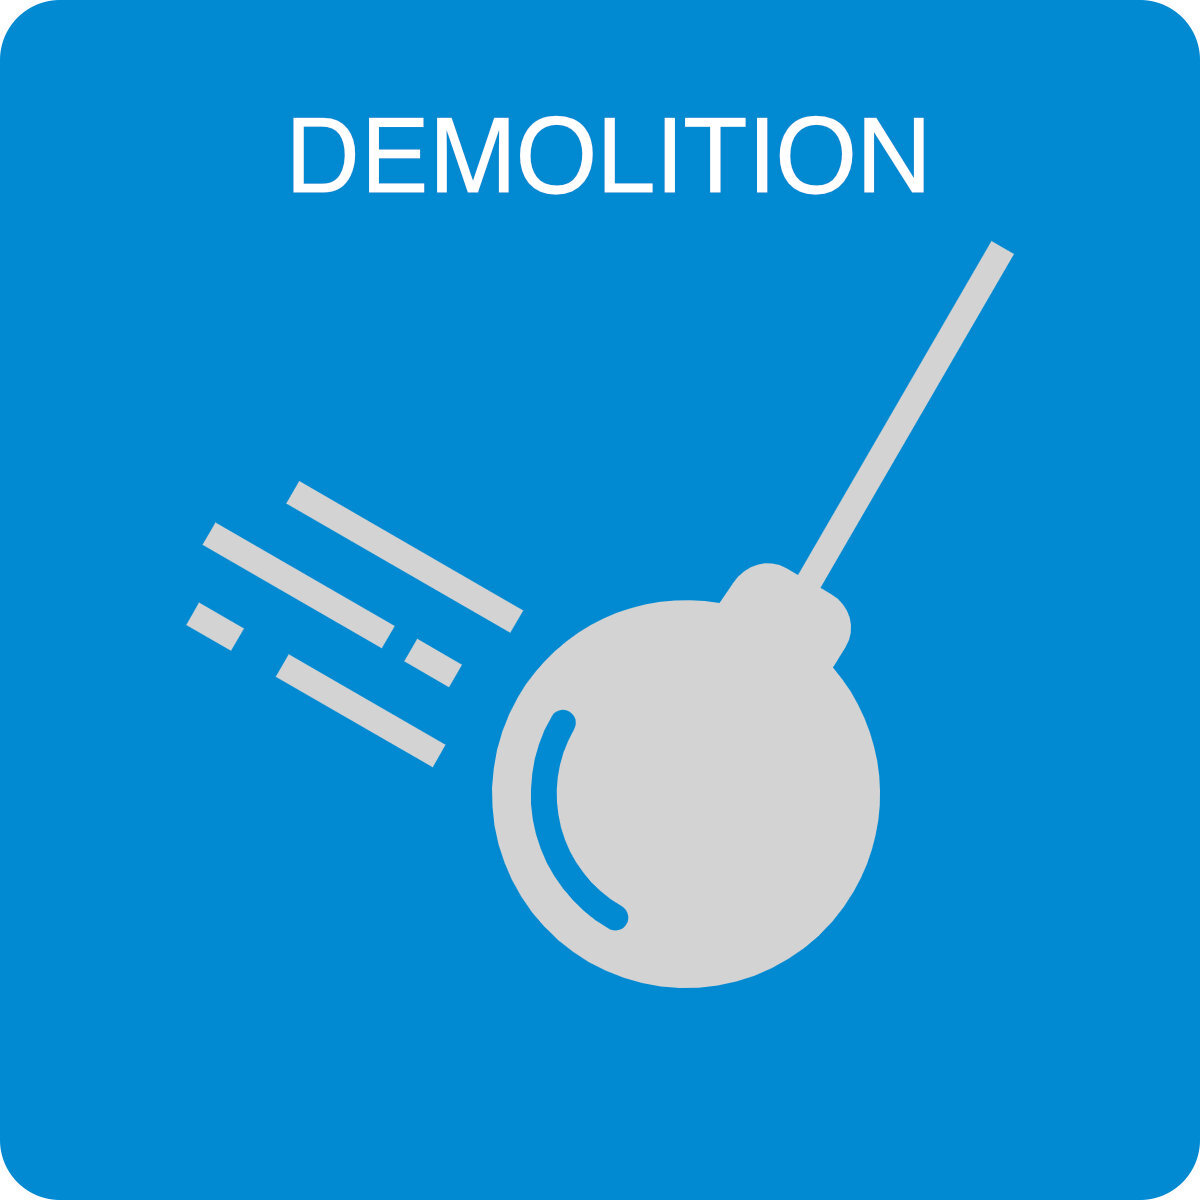 Demolition_tileicon_menai.jpg